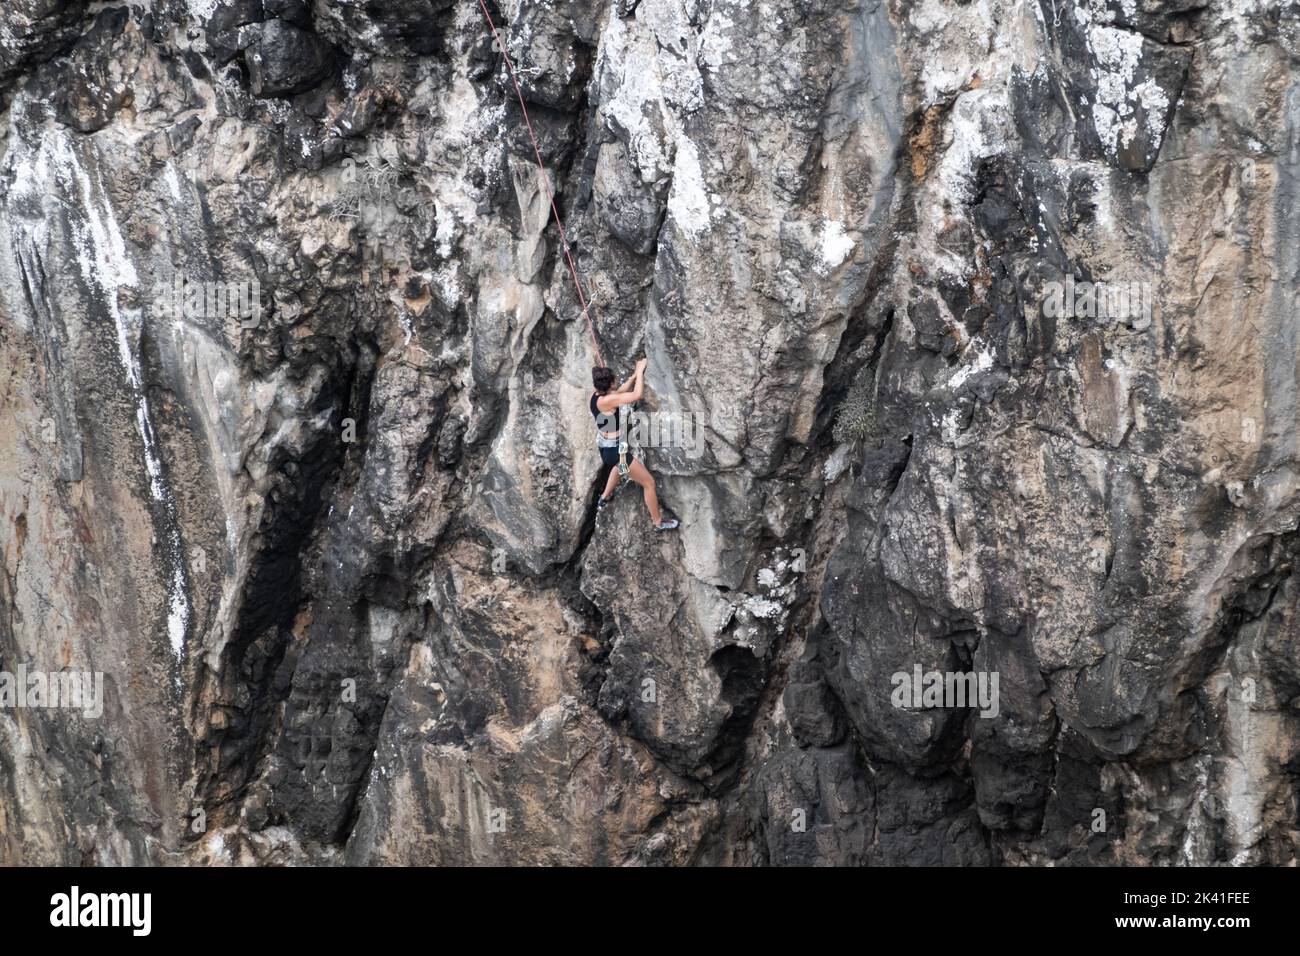 Sagres, Portugal - 30 mai 2022 : grimpeur de roche femelle unique montant une falaise côtière rugueuse fixée avec une corde supérieure en été près de Sagres Portugal Banque D'Images